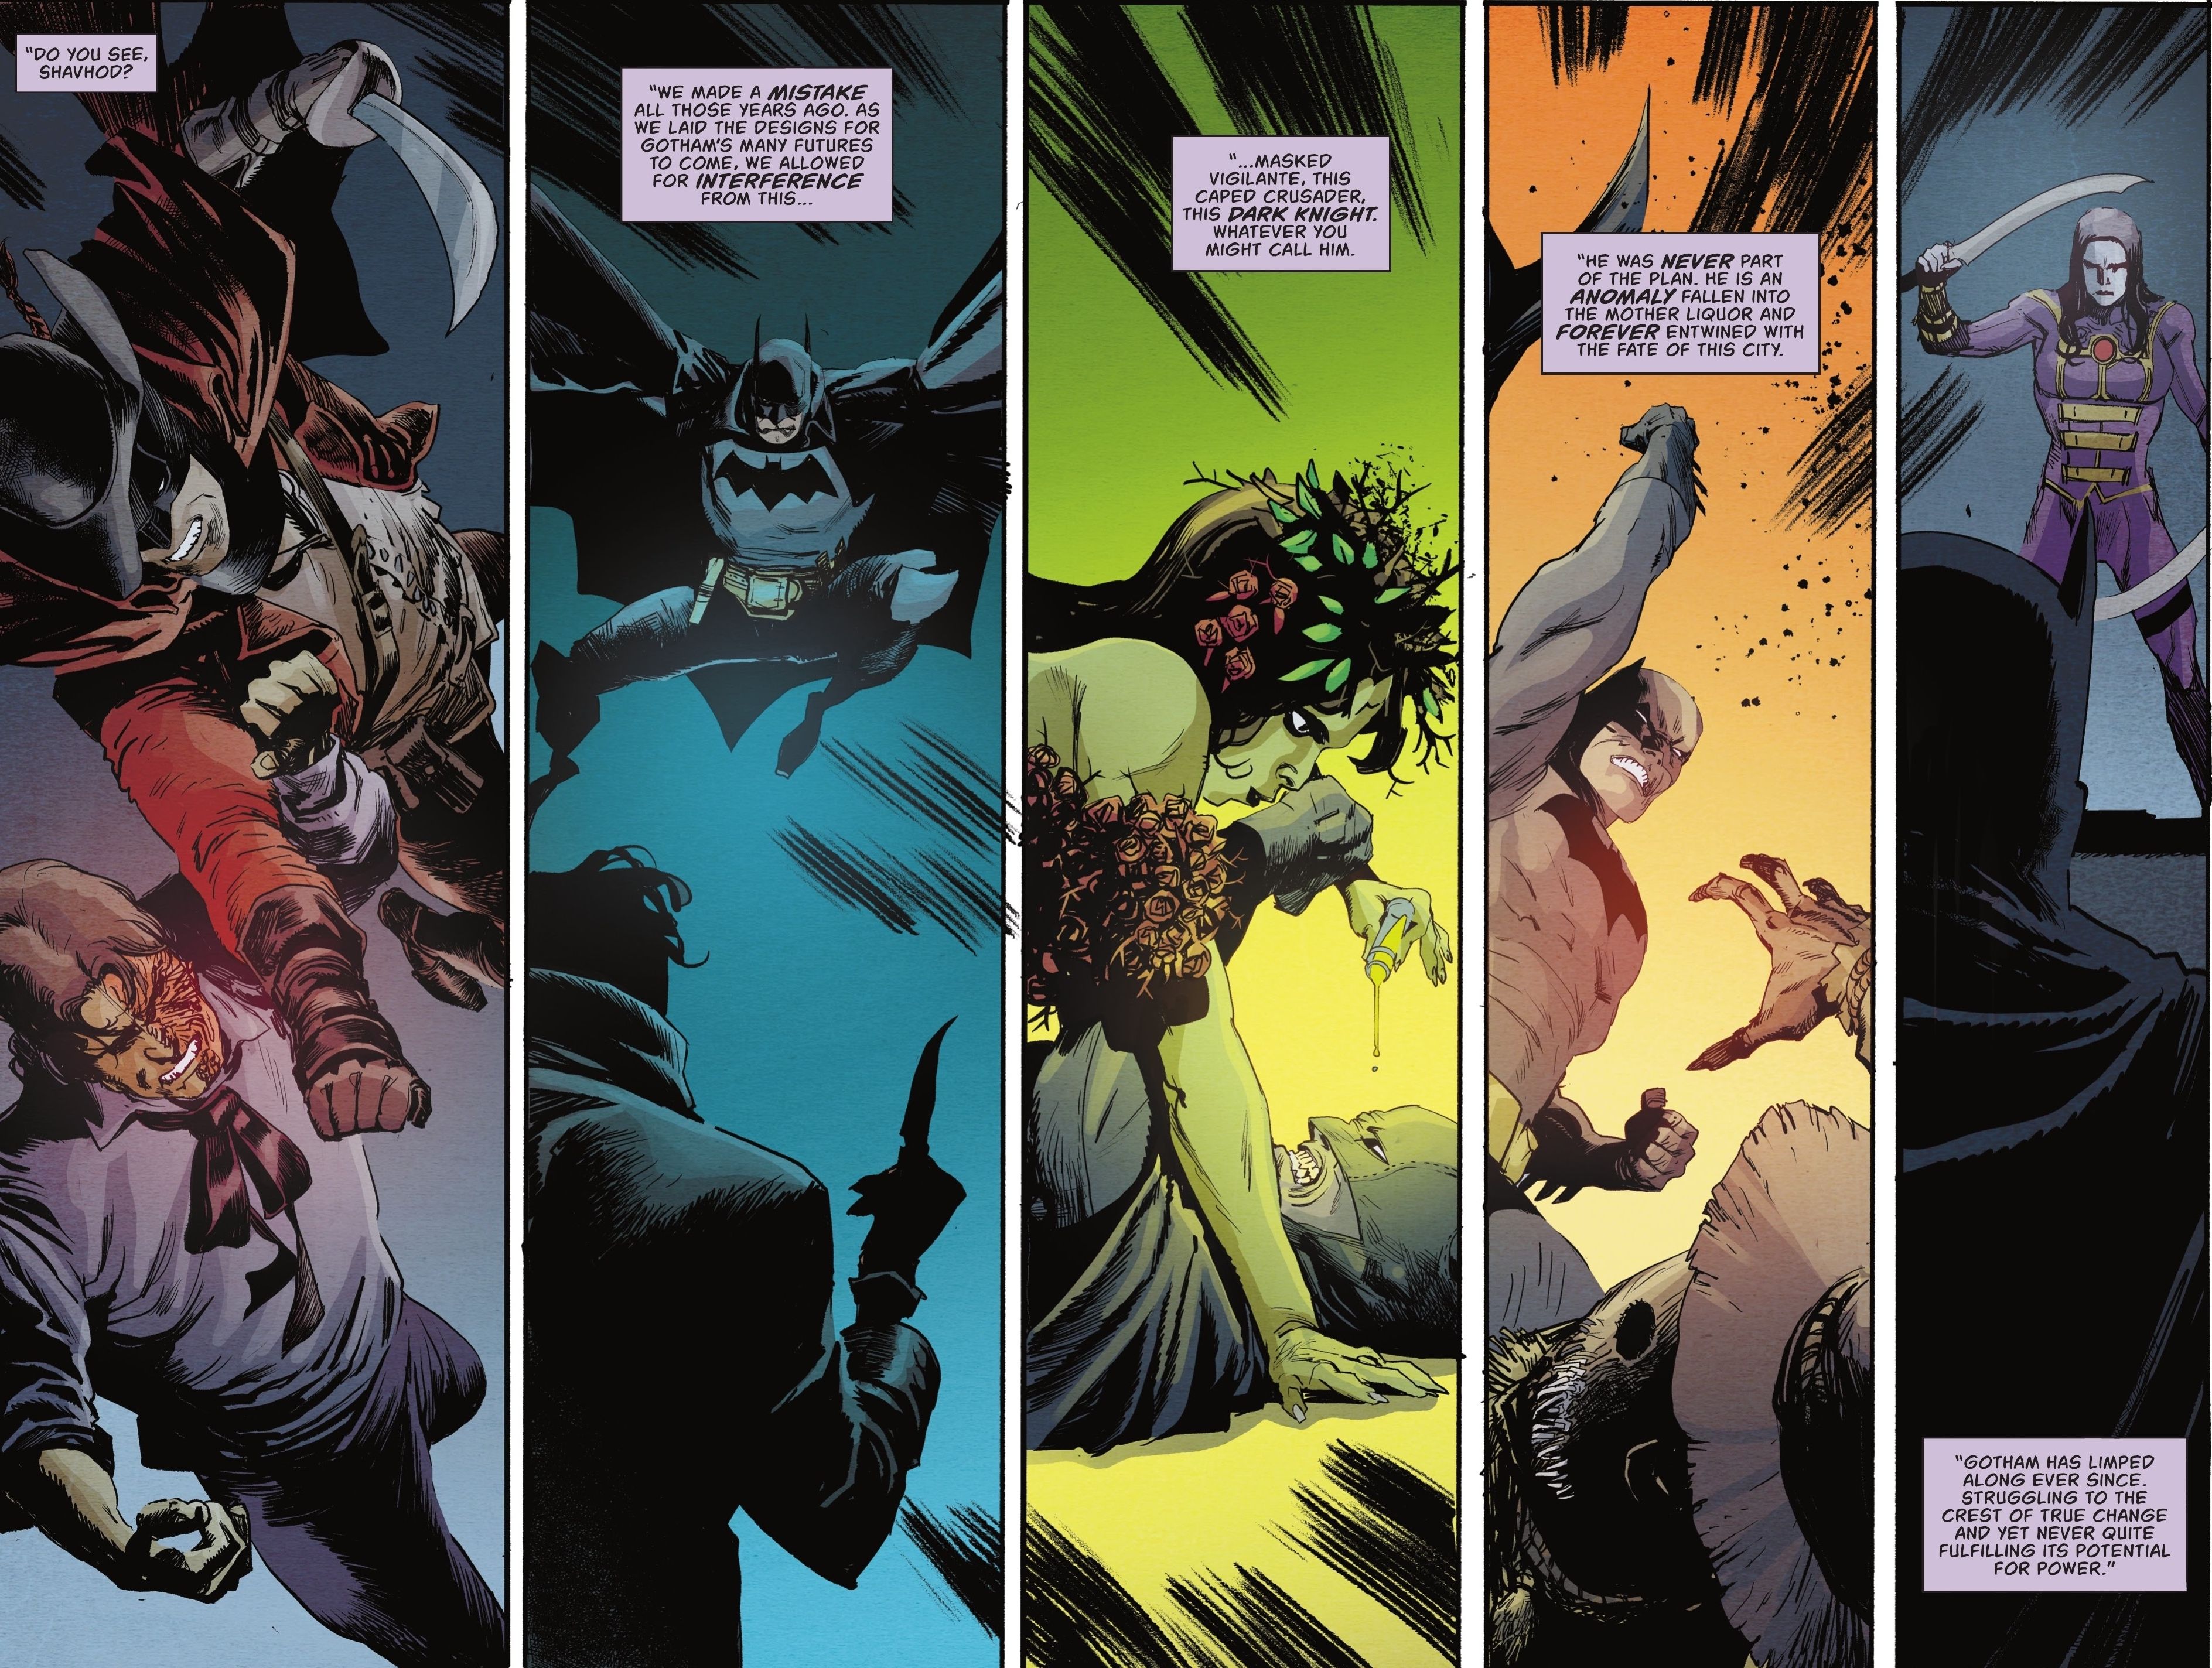 L'histoire secrète de Gotham avec Batman révélée dans Detective Comics